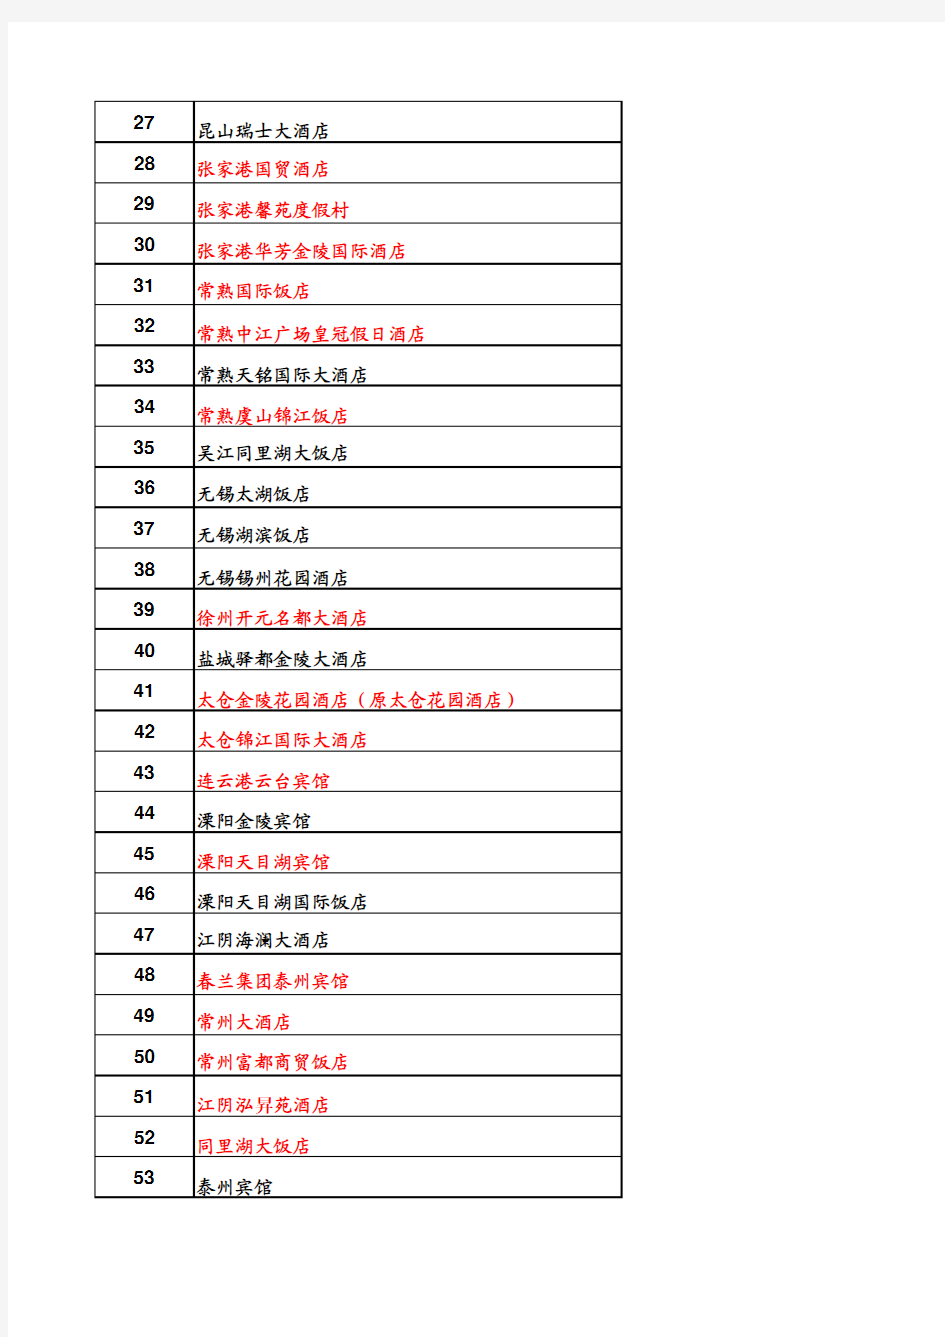 江苏省已经挂牌五星级酒店统计名单